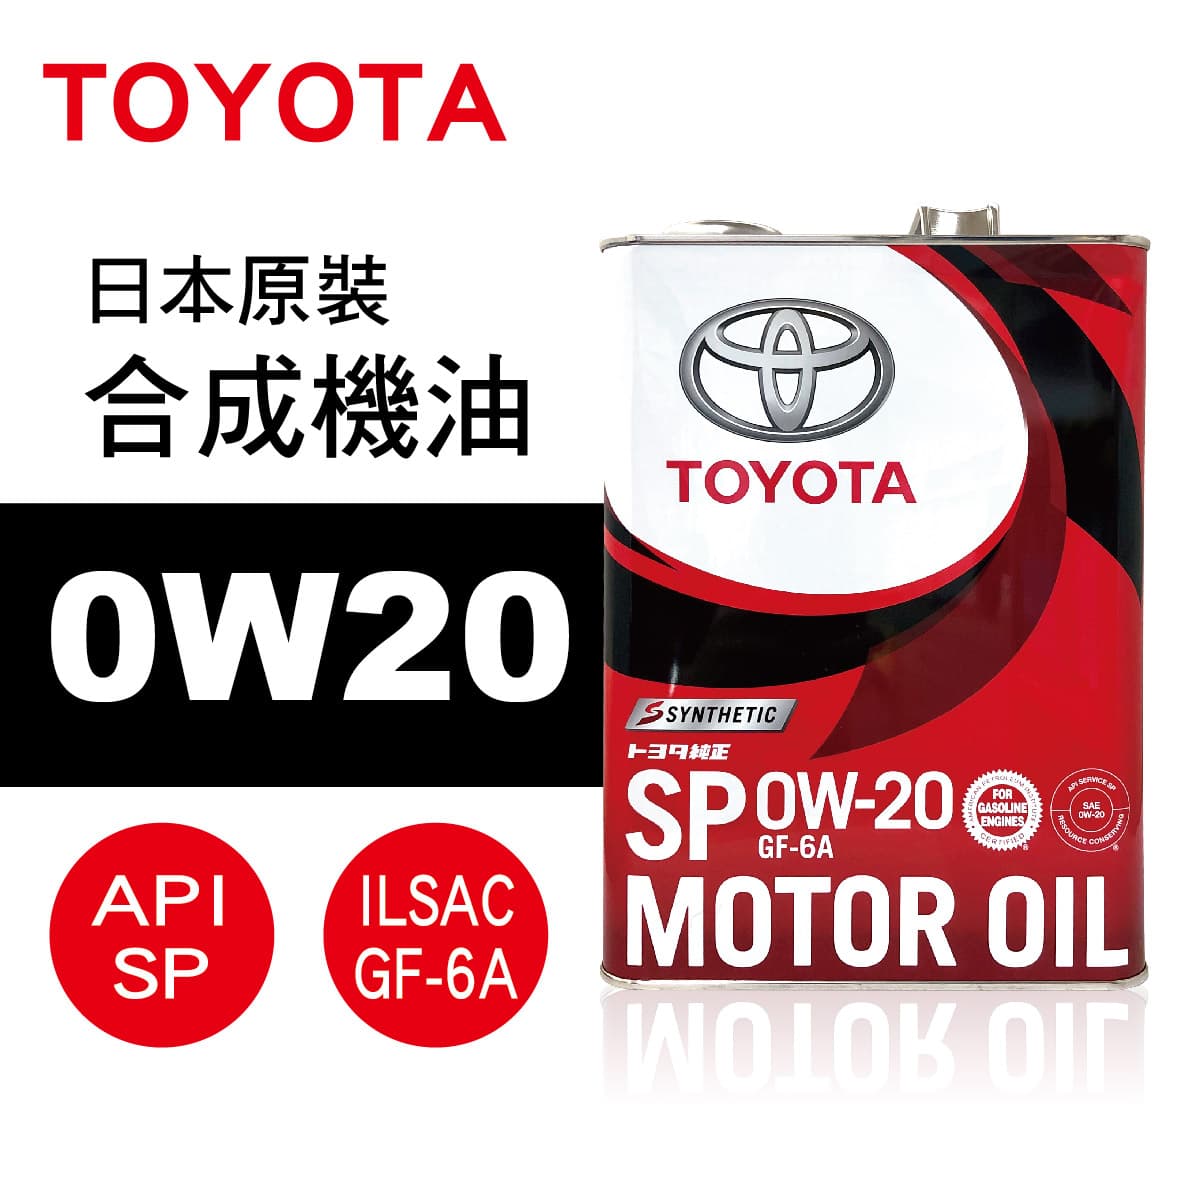 真便宜 TOYOTA豐田 0W20 日本原裝合成機油(SP級 GF-6A)4L(公司貨)